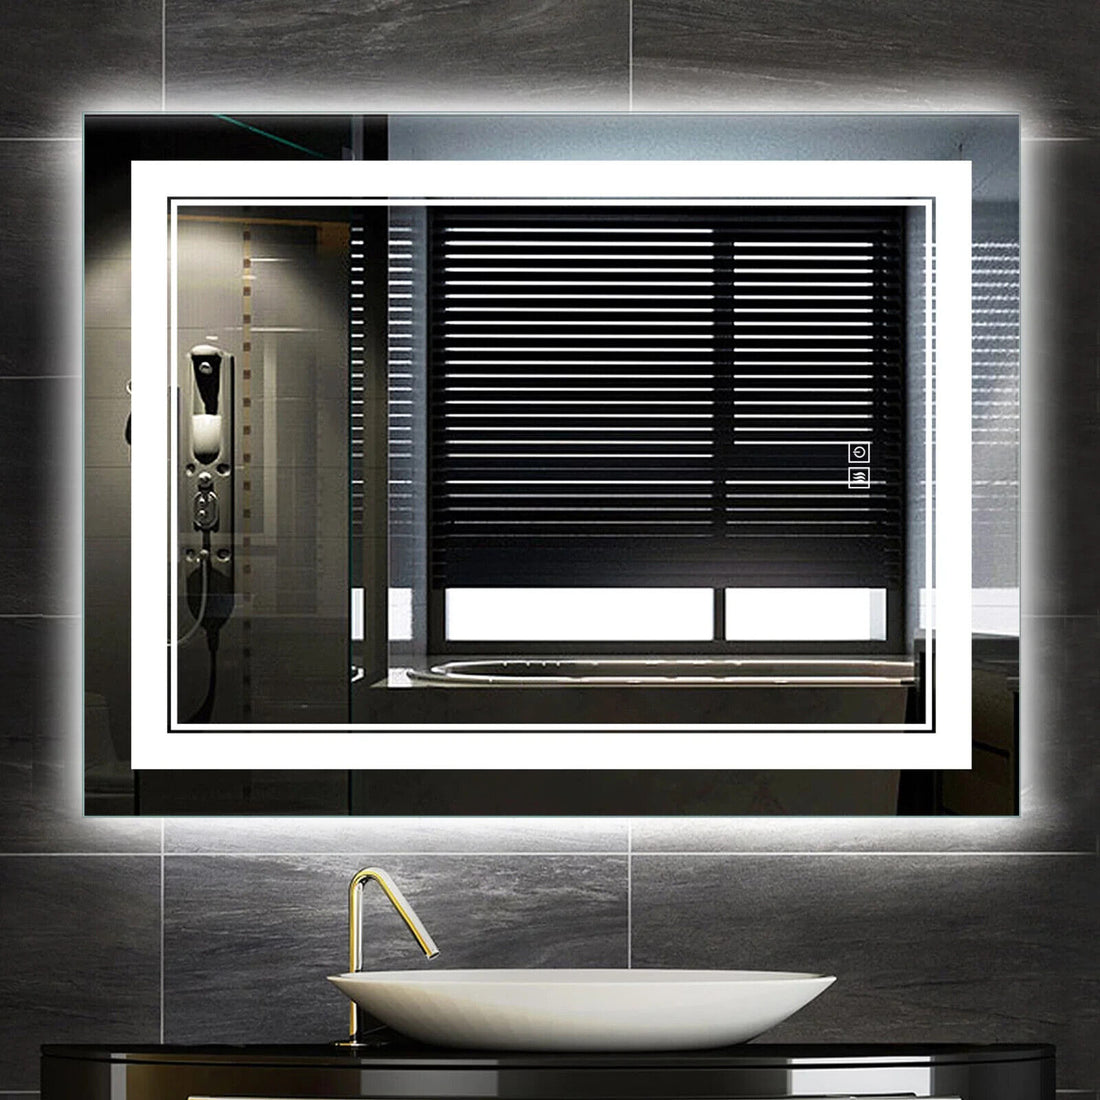 NEUTYPE 32 in. x 24 in. Modern Rectangular Frameless LED Bathroom Vanity Mirror - Like New